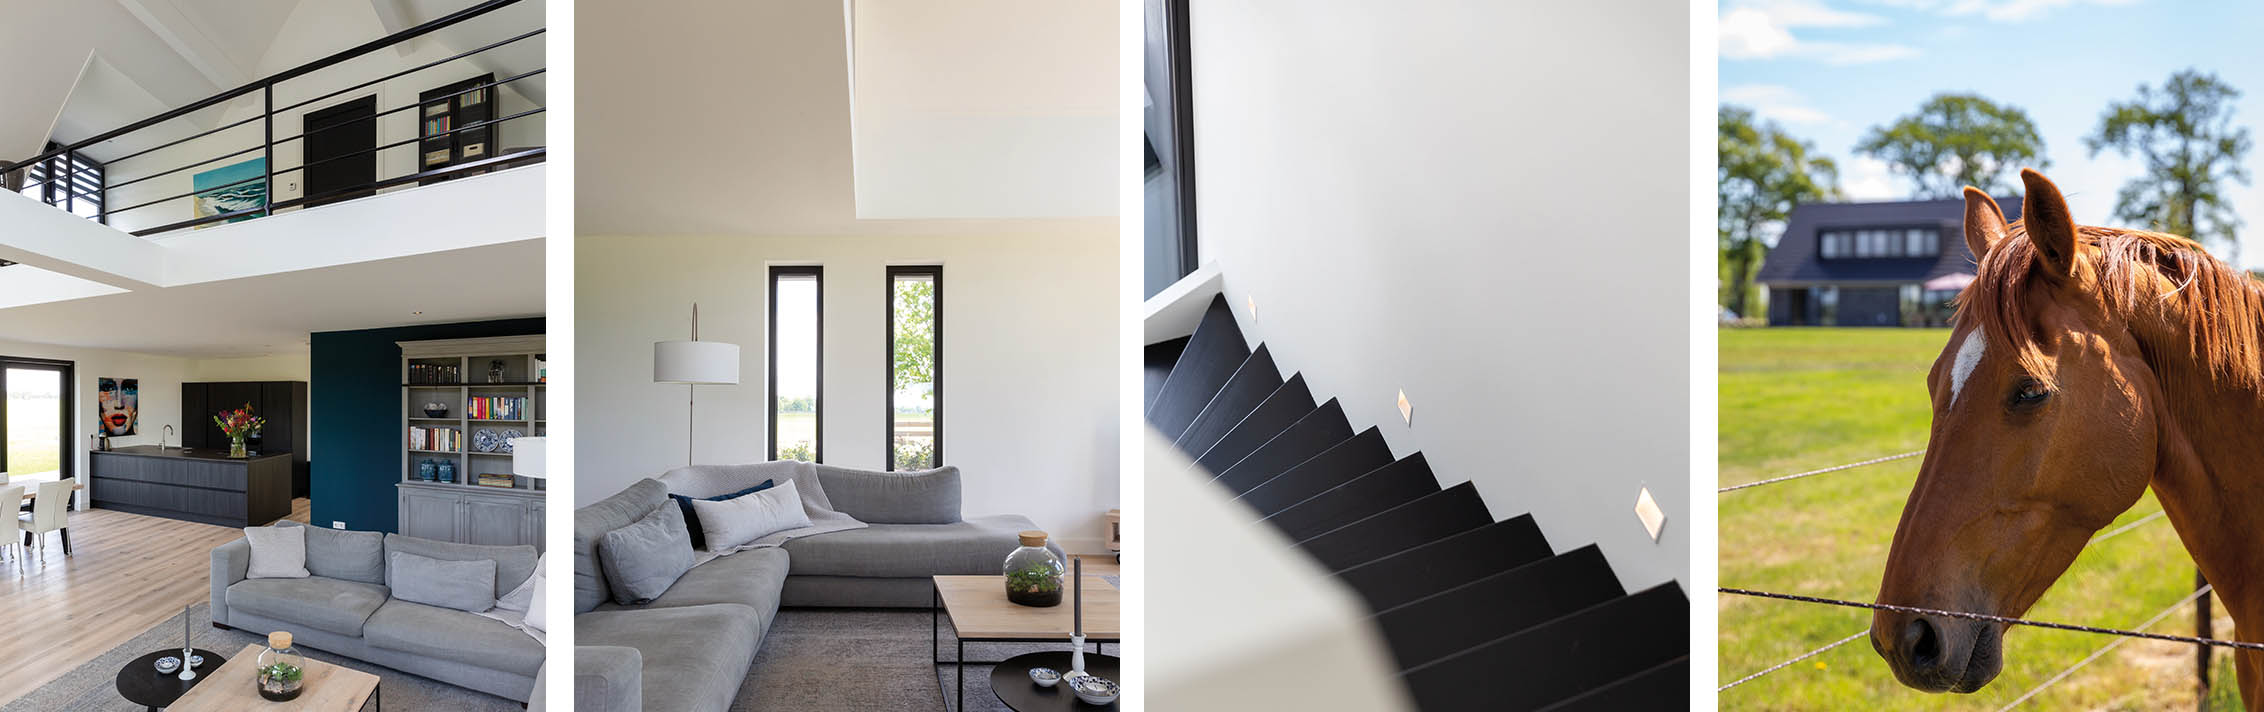 De woonruimte met keuken is ruimtelijke door het hoge plafond met vide - trap - in harmonie met de omgeving